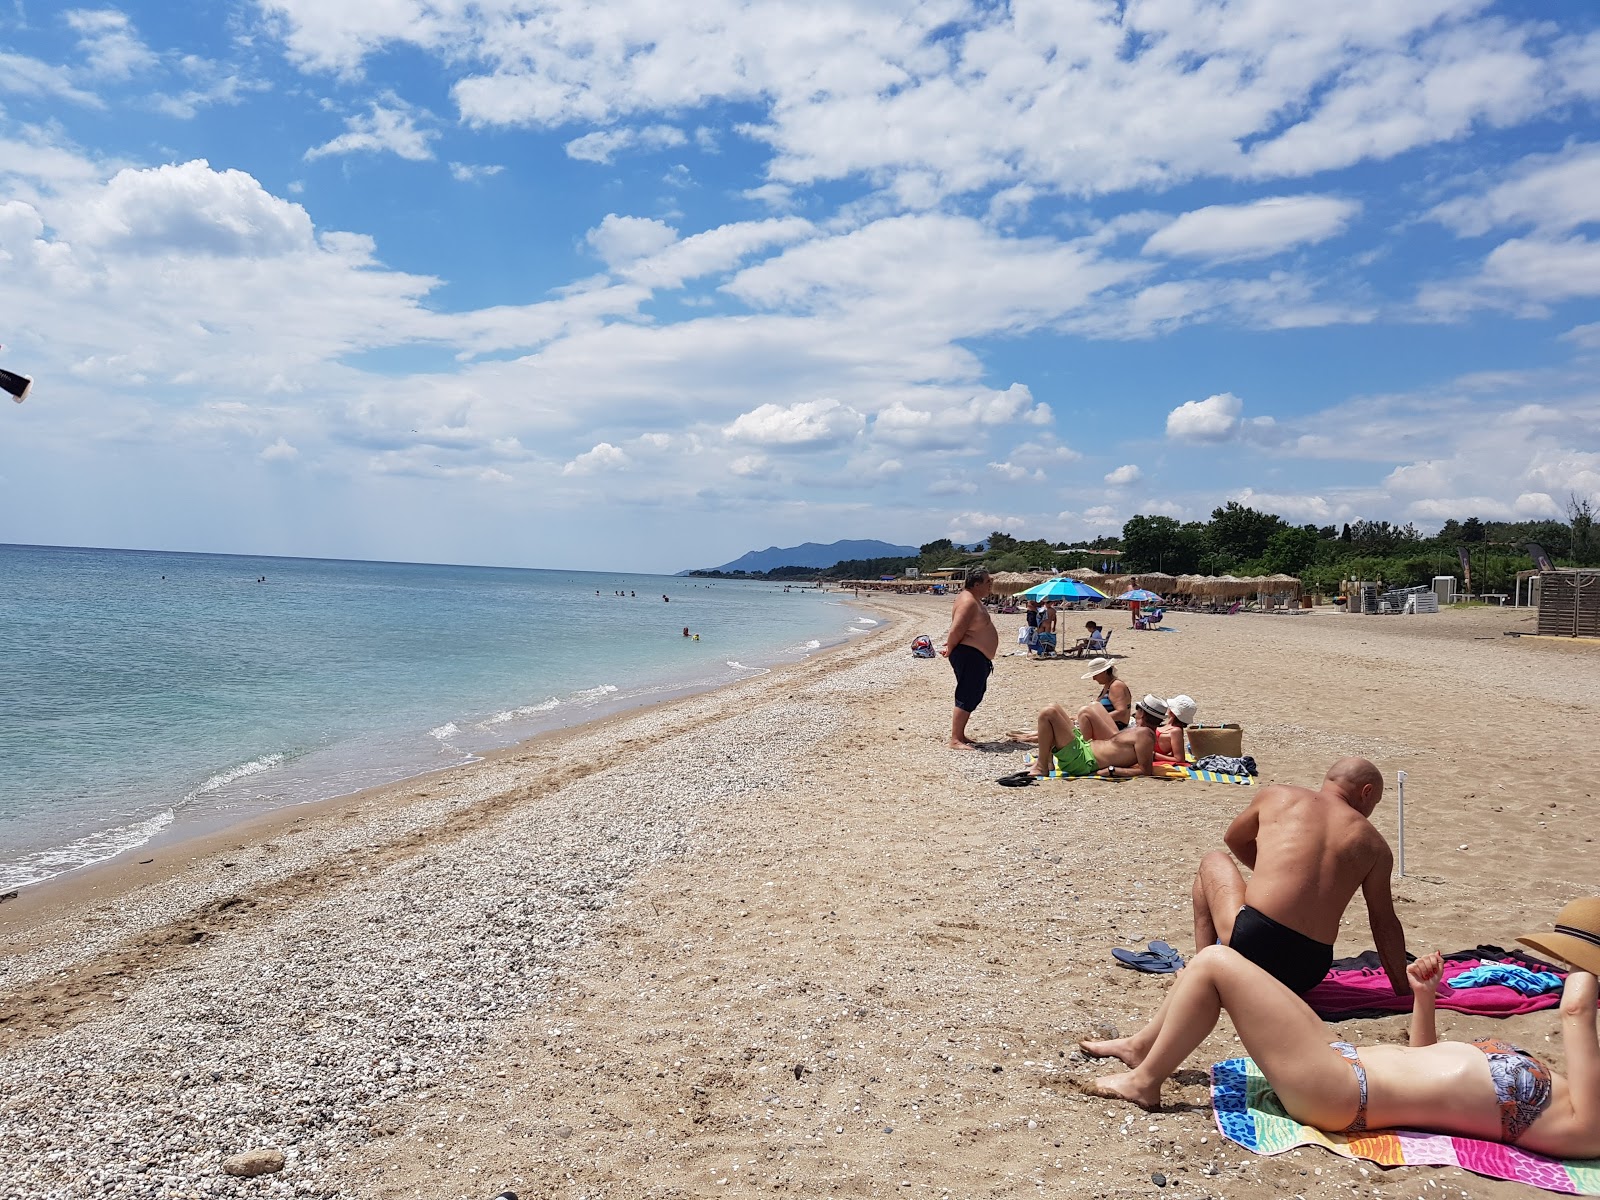 Fotografie cu Yolo's beach II - locul popular printre cunoscătorii de relaxare